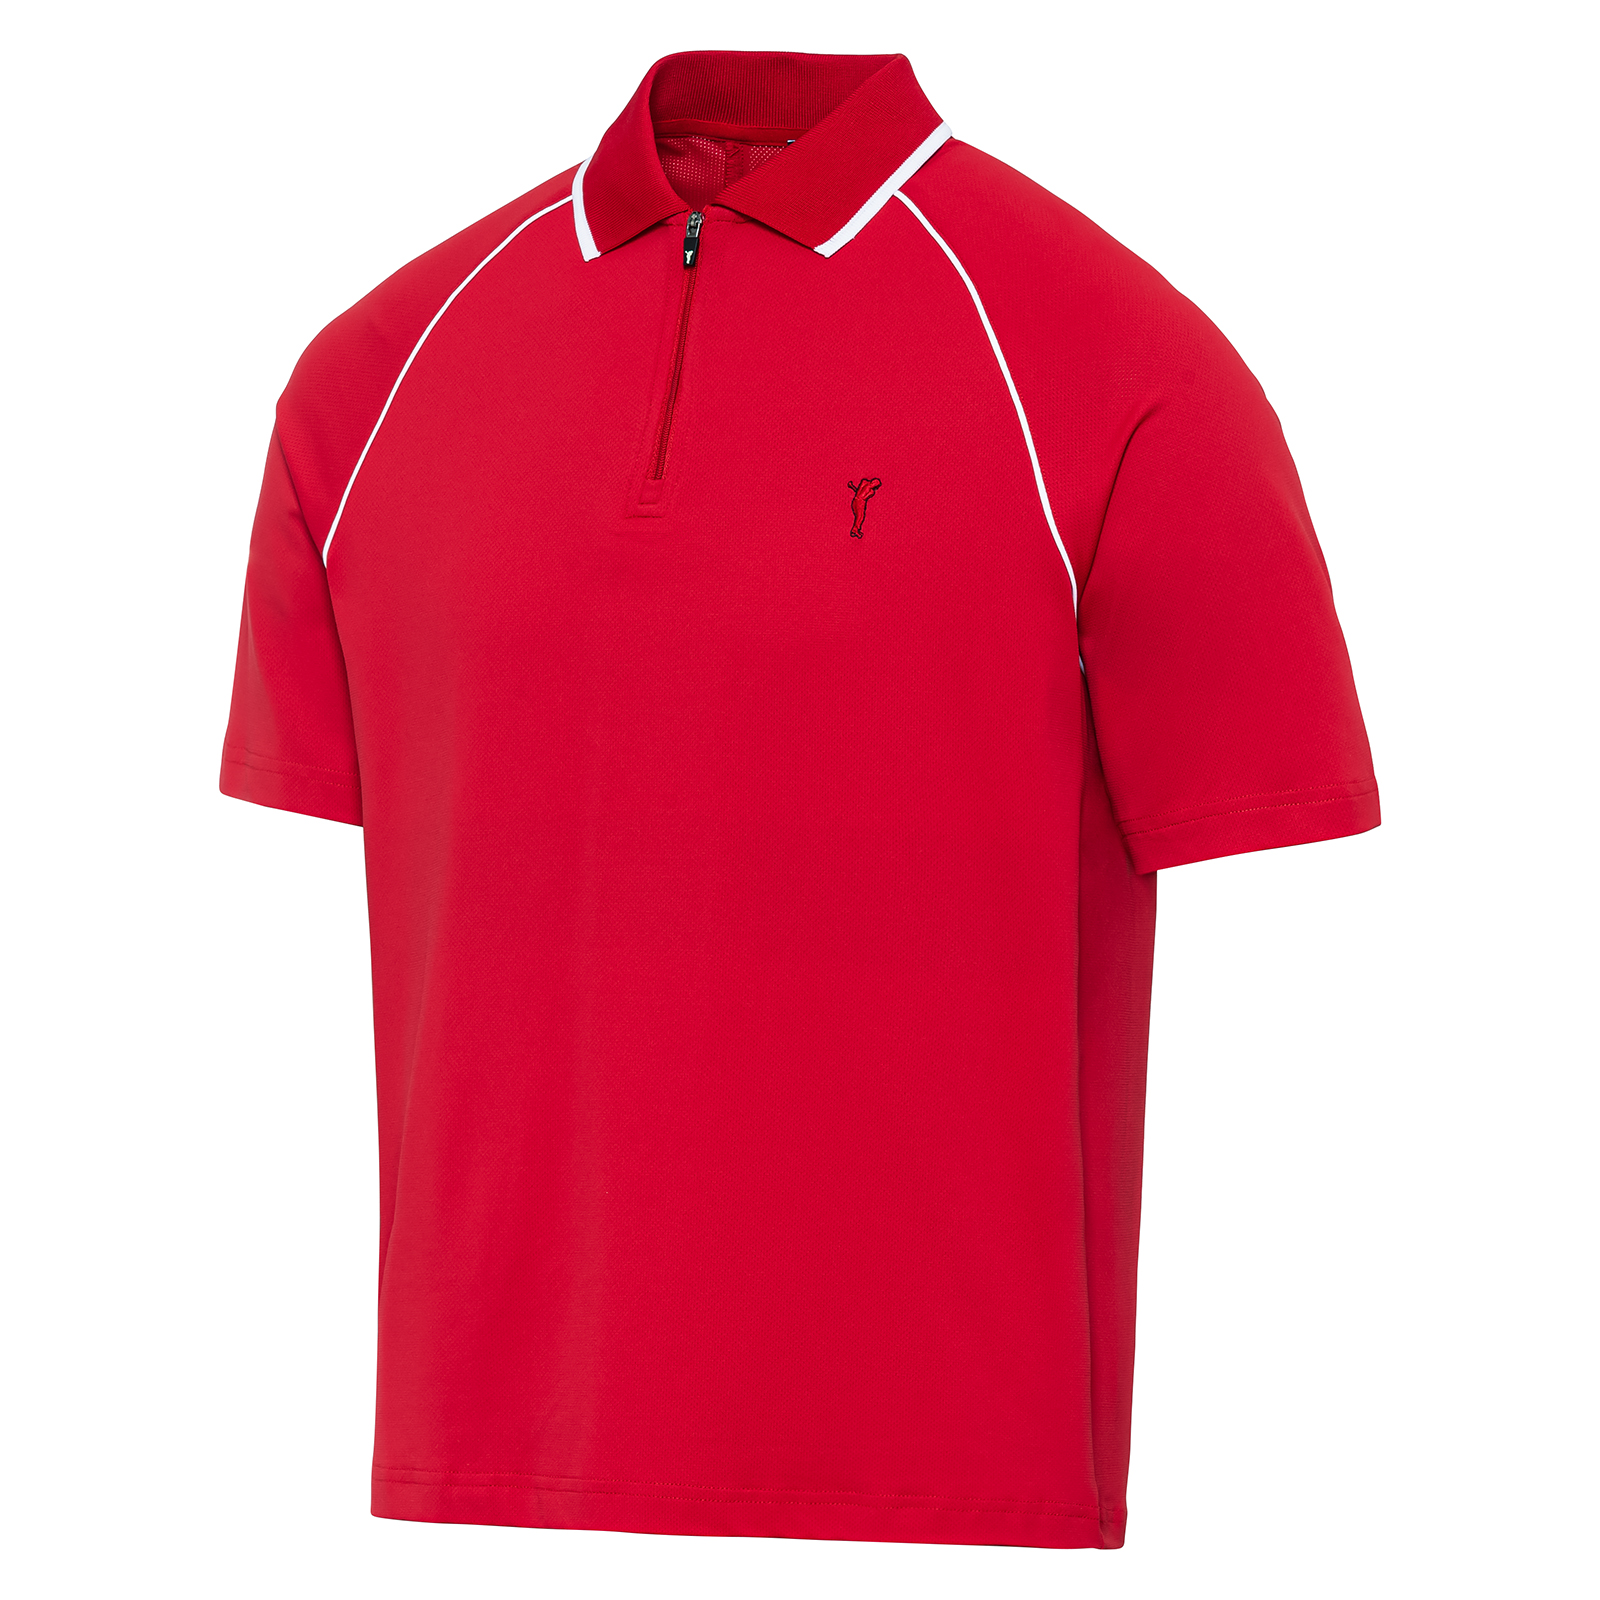 Men's stretch golf polo shirt